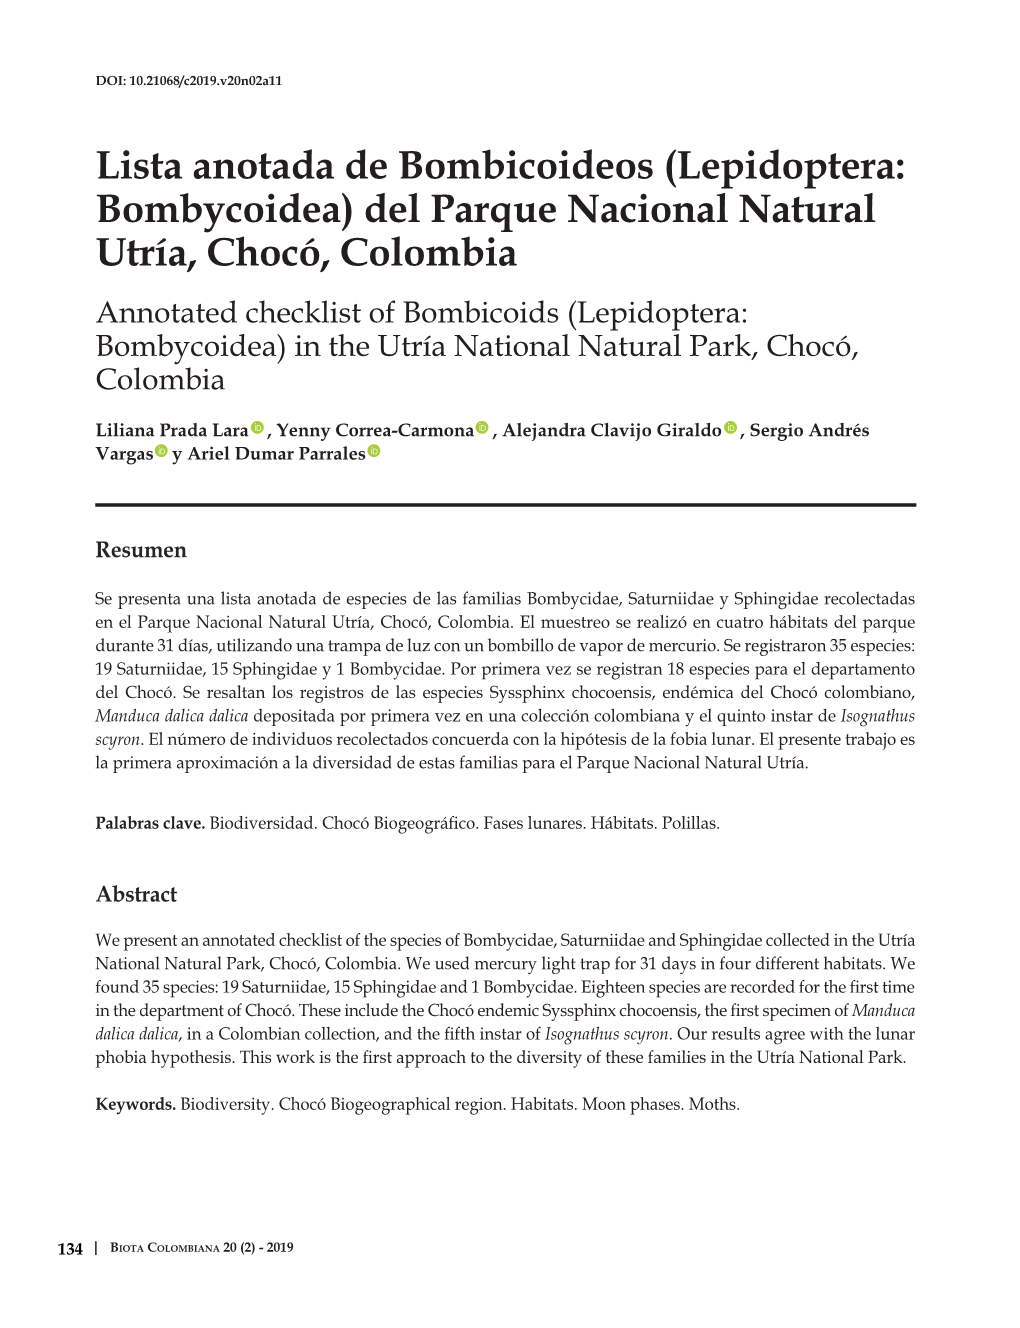 Del Parque Nacional Natural Utría, Chocó, Colombia Annotated Checklist of Bombicoids (Lepidoptera: Bombycoidea) in the Utría National Natural Park, Chocó, Colombia